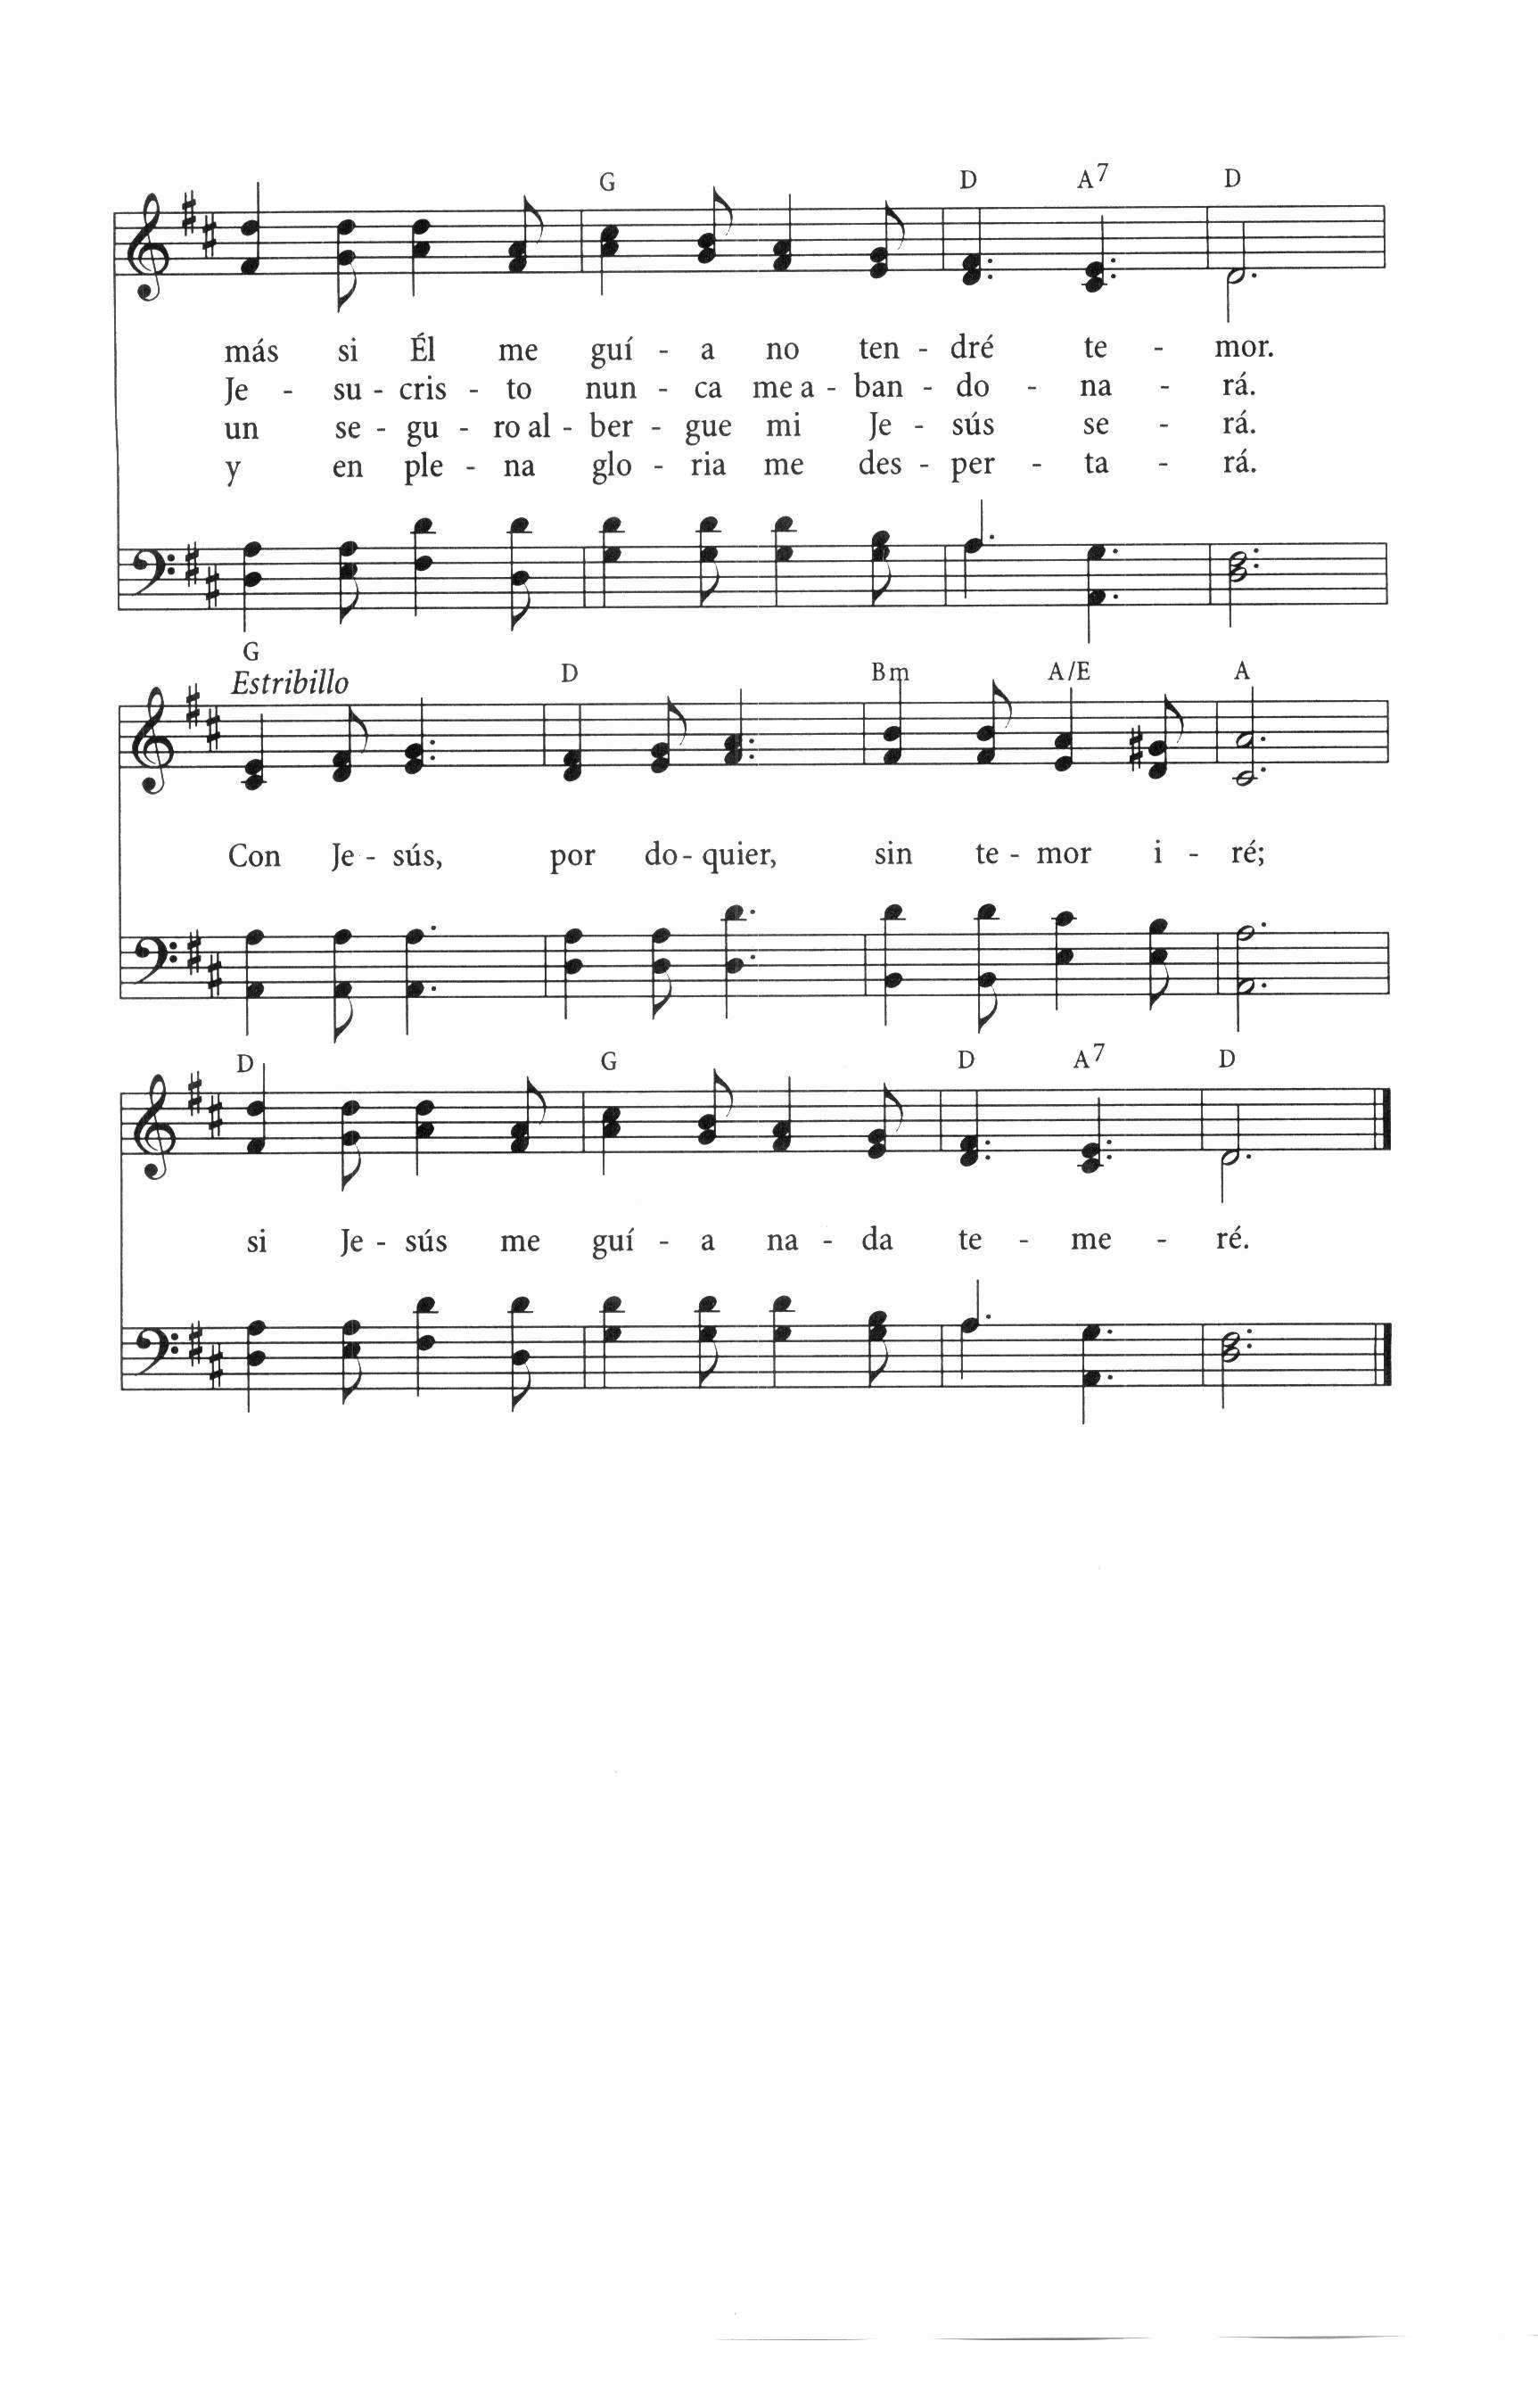 El Himnario page 493